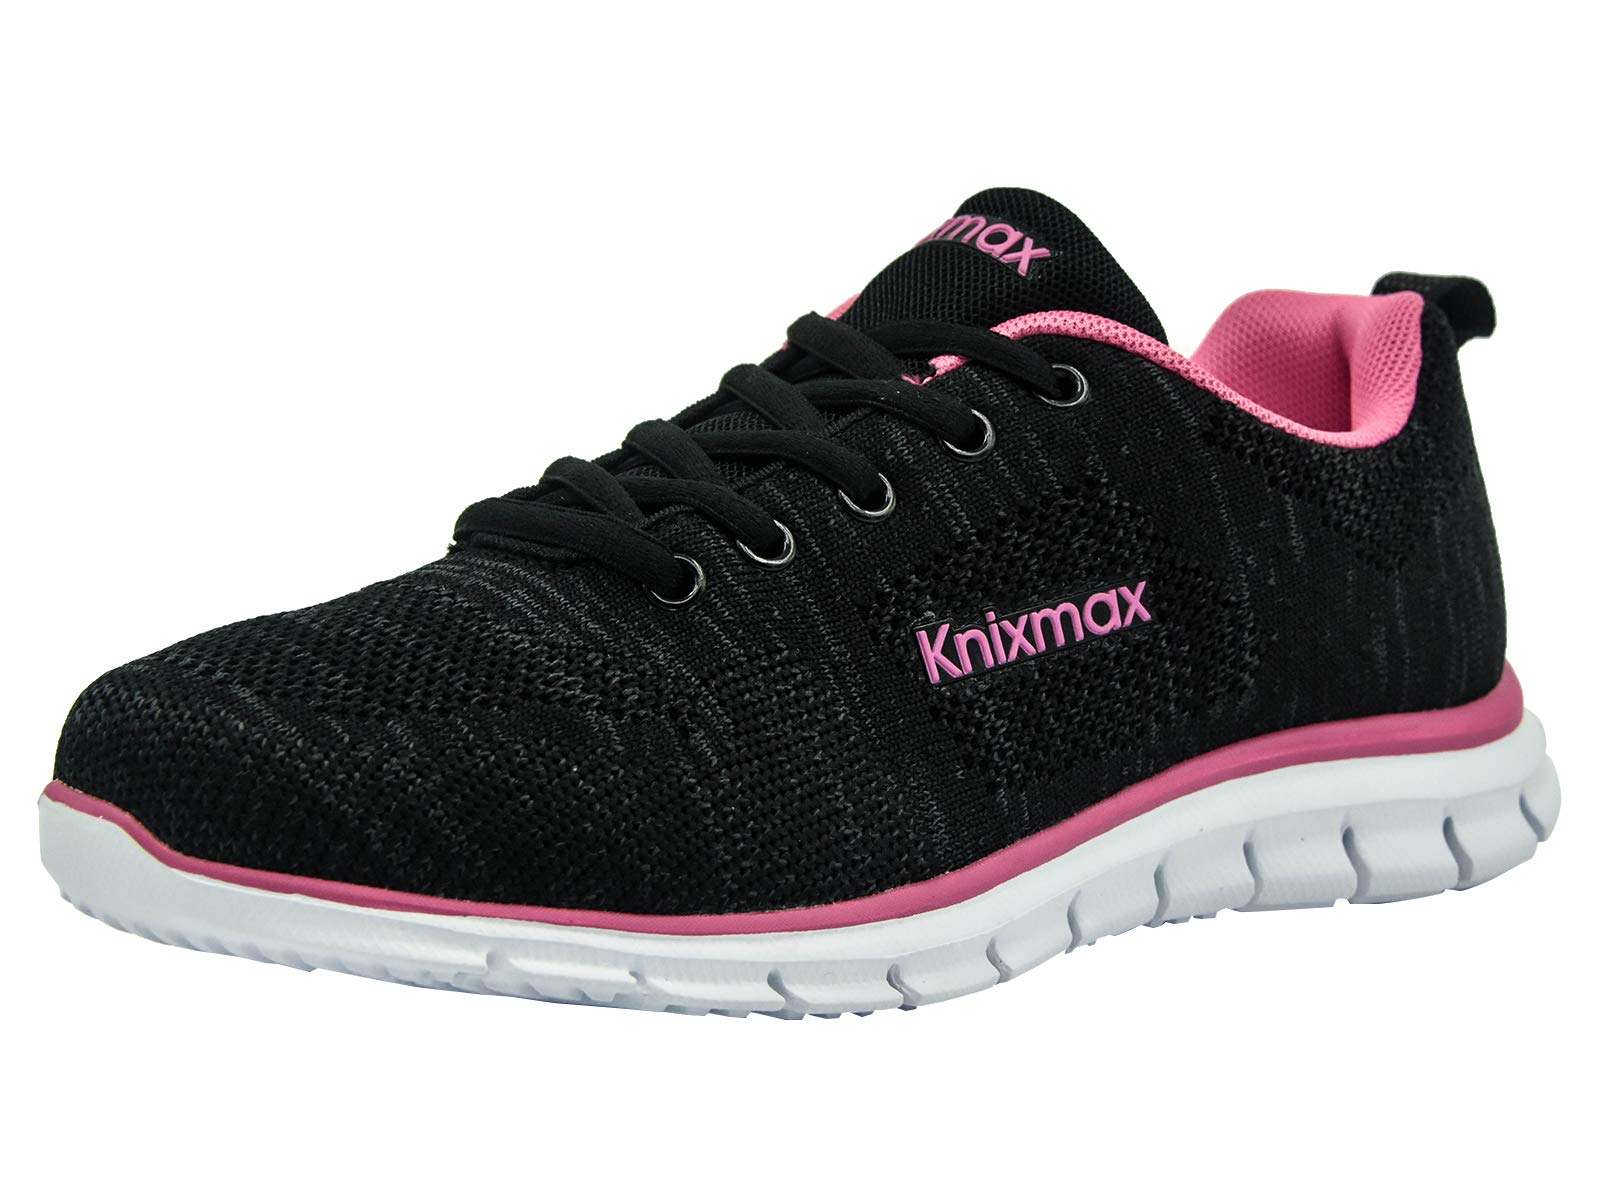 Knixmax Damen Sneaker Leichte Laufschuhe Sportschuhe Atmungsaktiv Bequem Turnschuhe Fitnessschuhe Knit Schwarz-Rosa Frauen Gr.40 EU